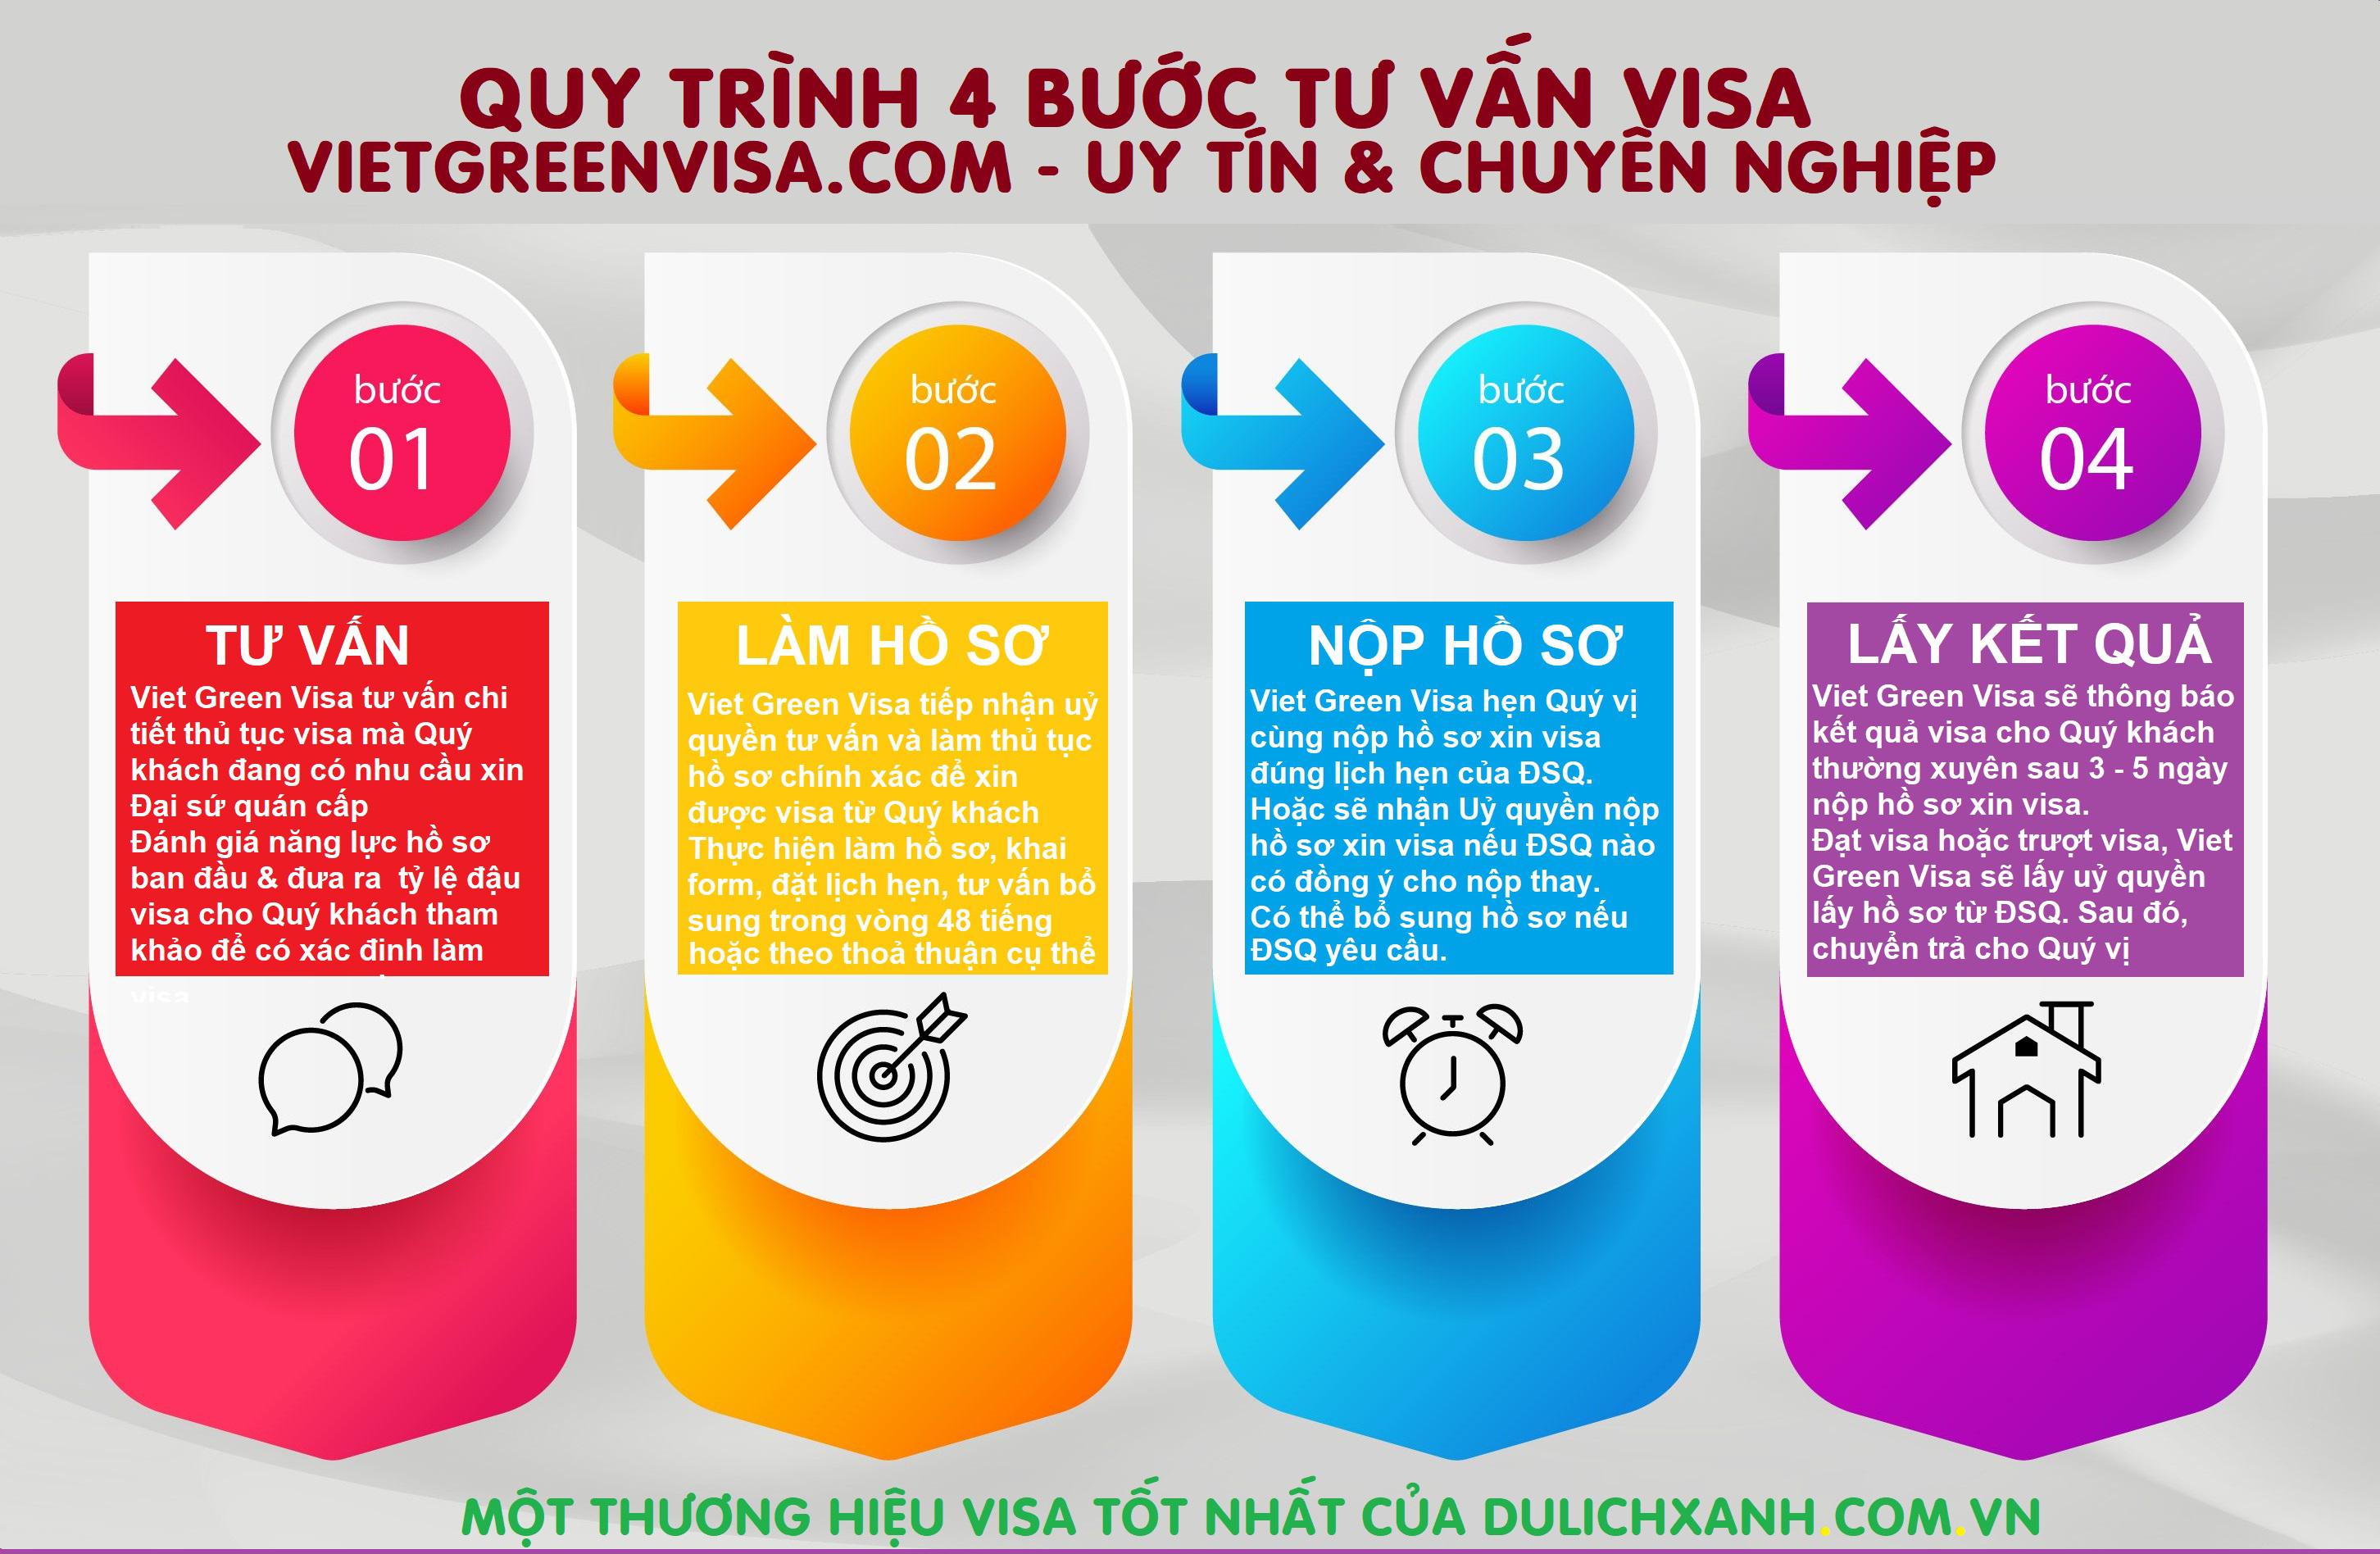 Dịch vụ xin visa Canada trọn gói tại Hà Nội, Viet Green Visa